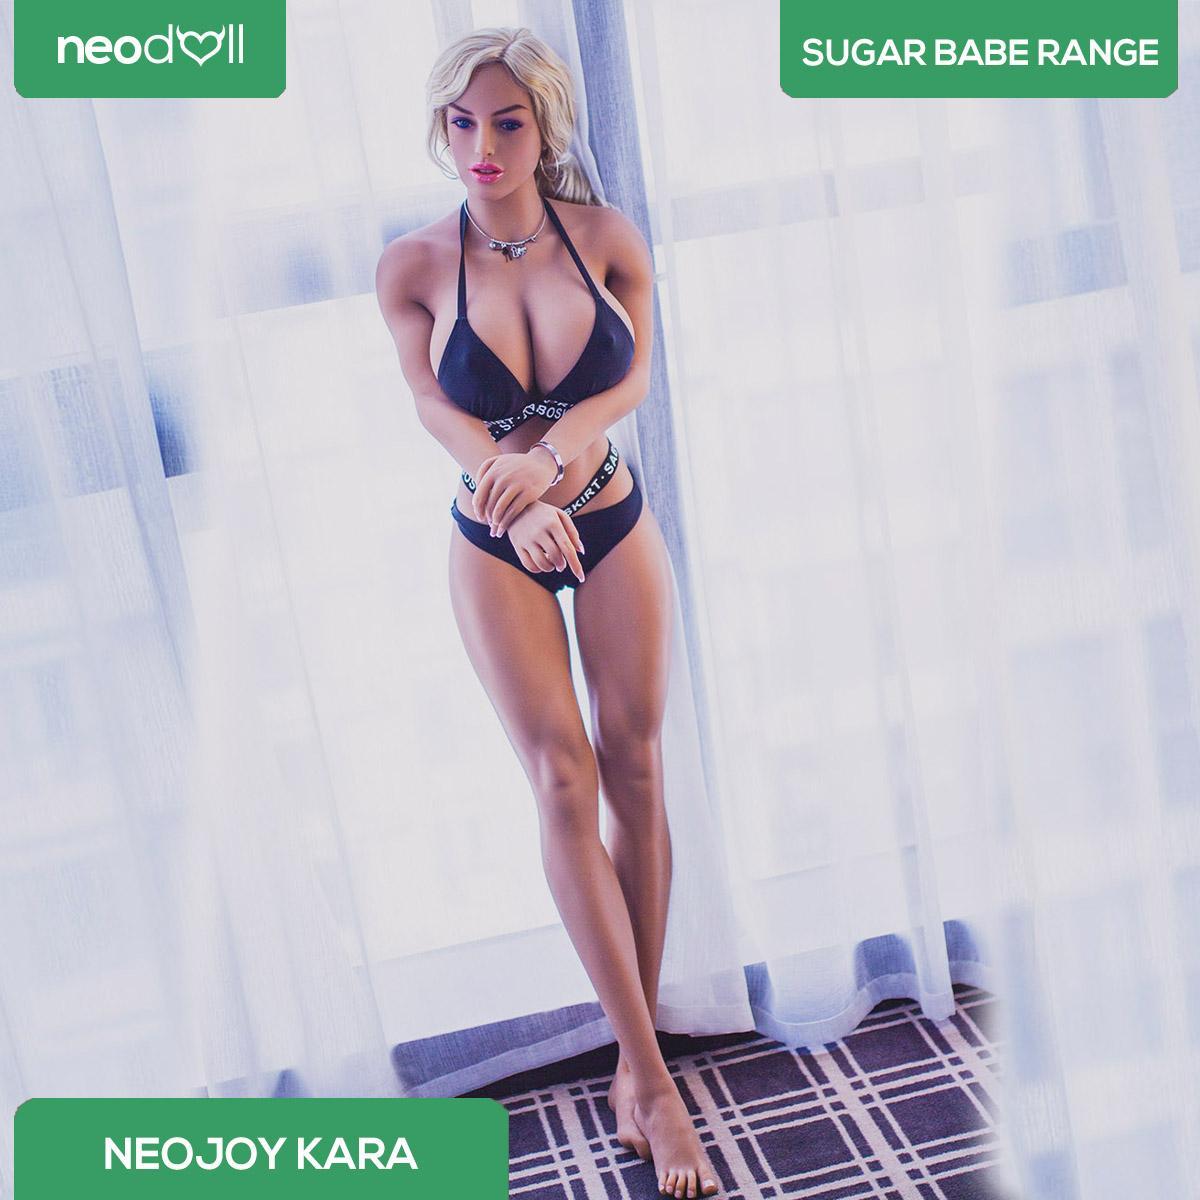 Neodoll Sugar babe - Kara - Realistic Sex Doll - Gel Breast - Uterus - 166cm-Tan